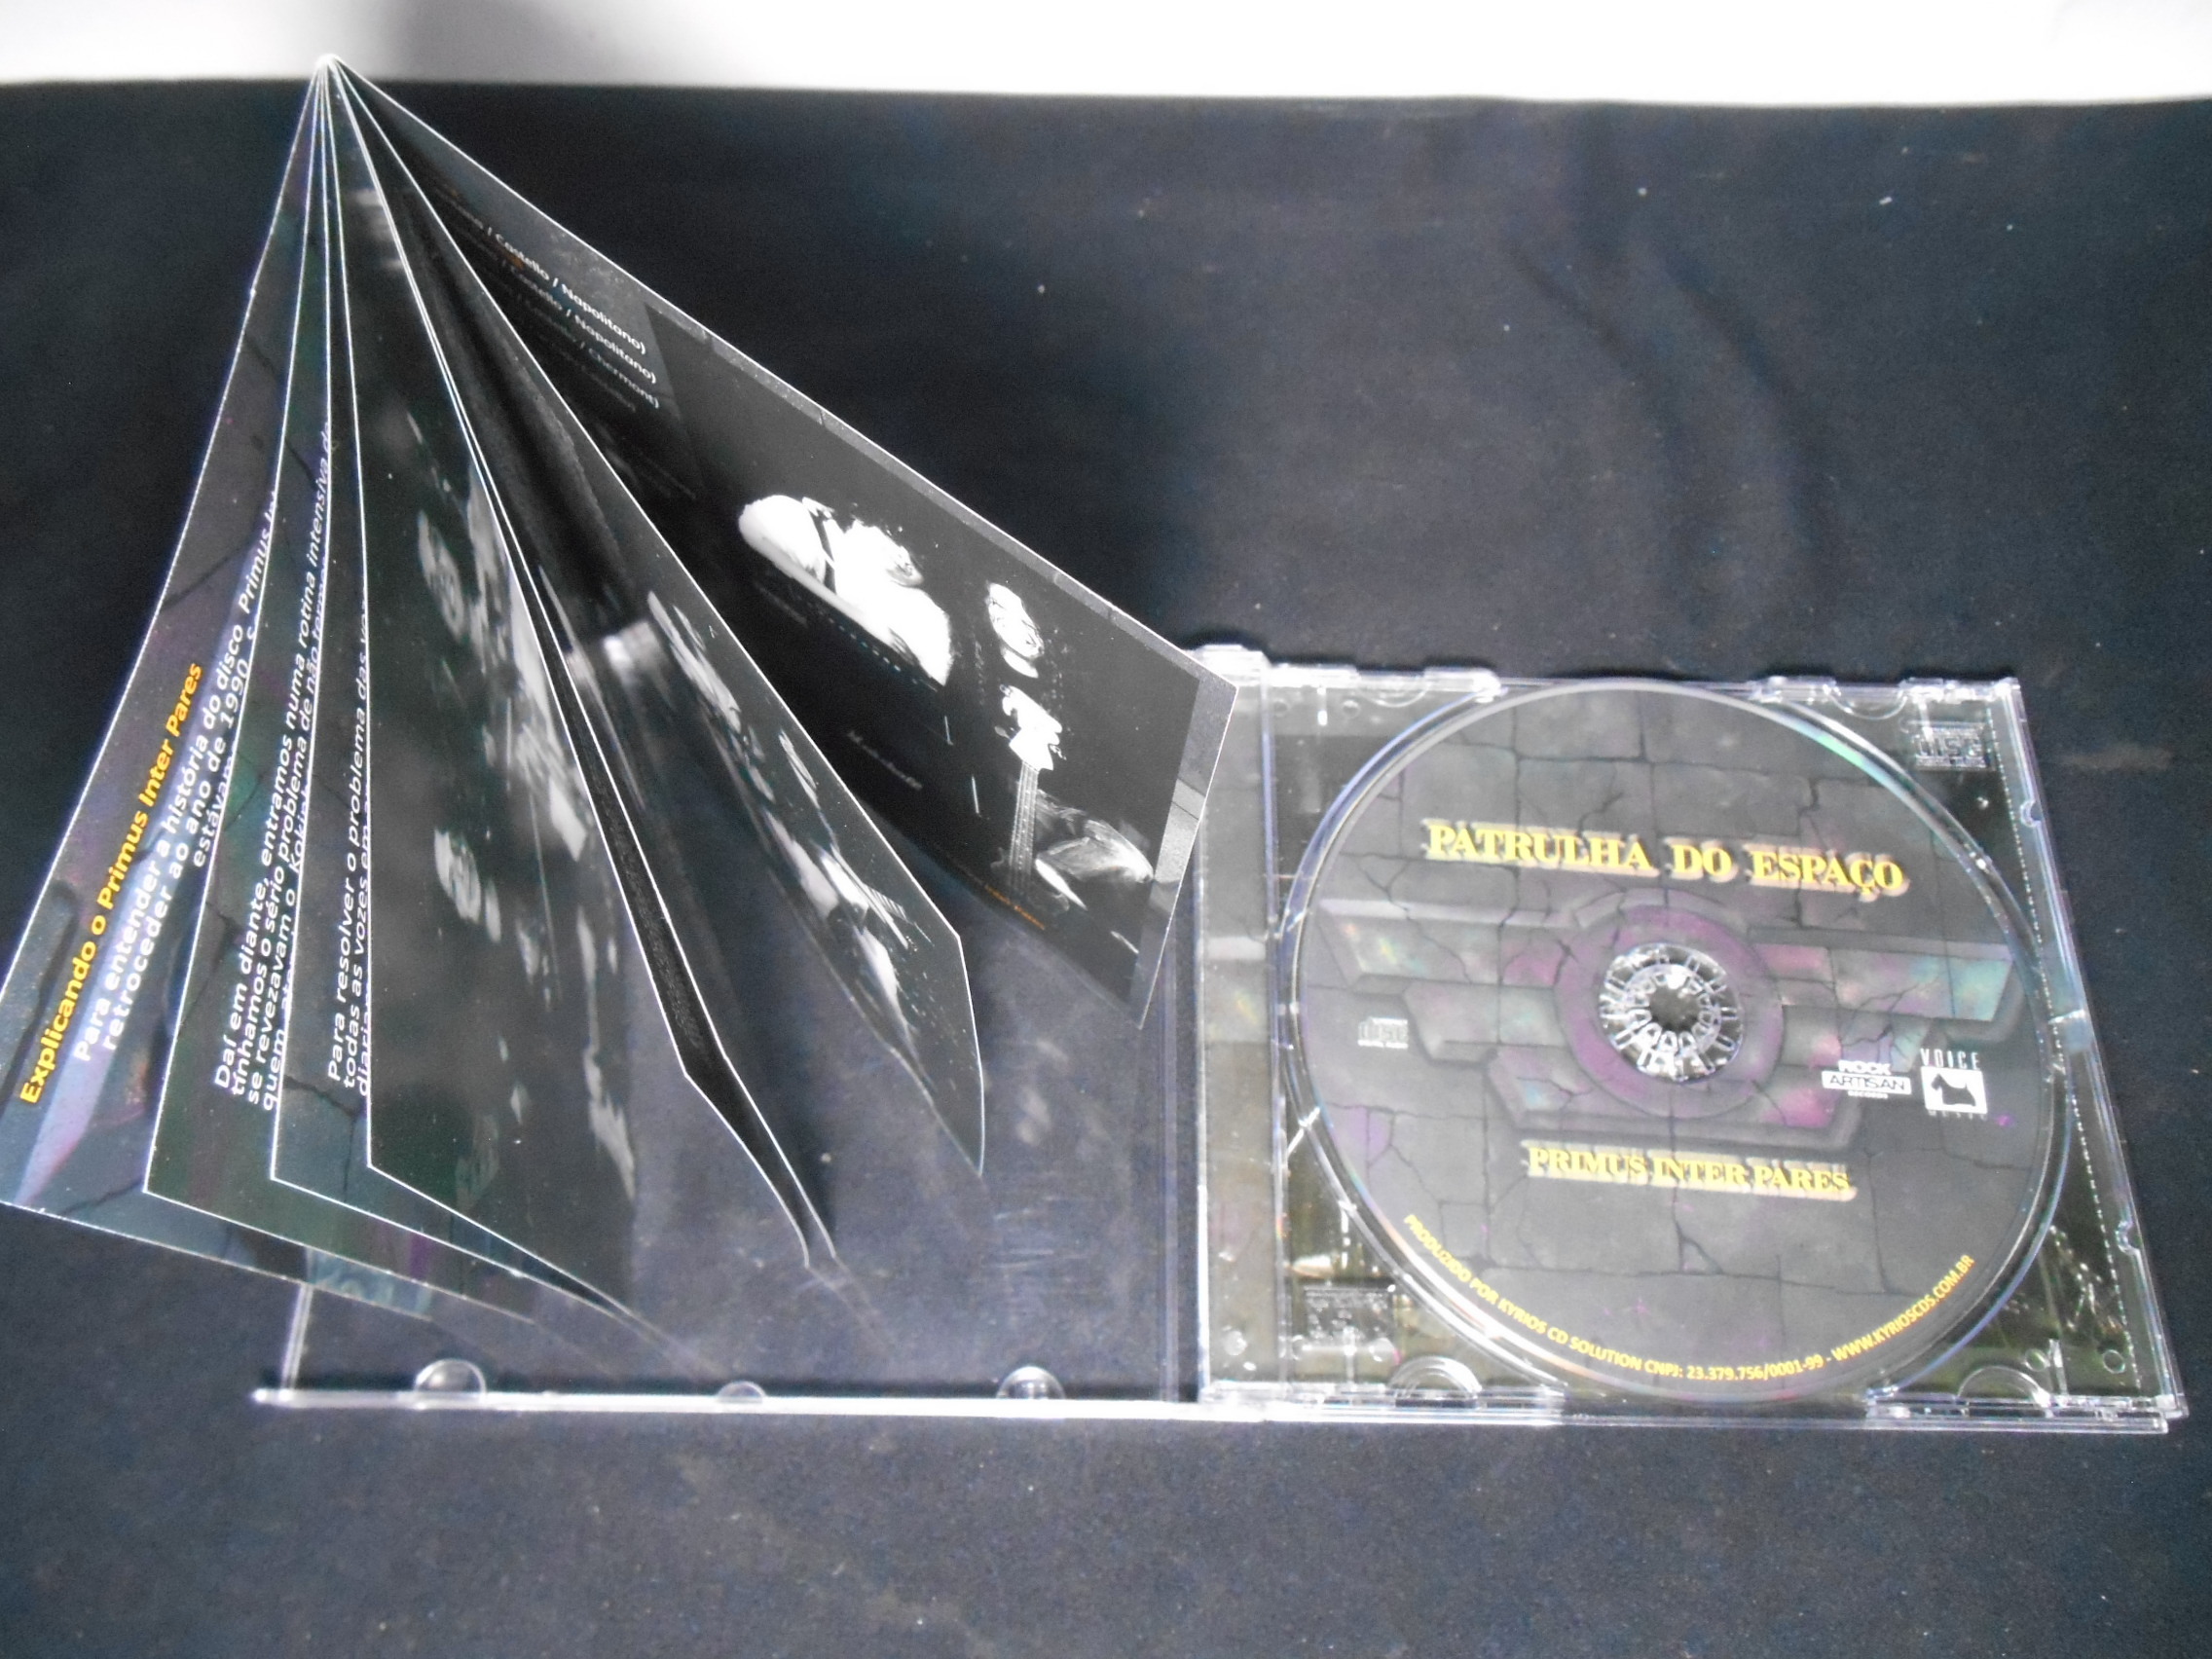 CD - Patrulha do Espaço - Primus Inter Pares